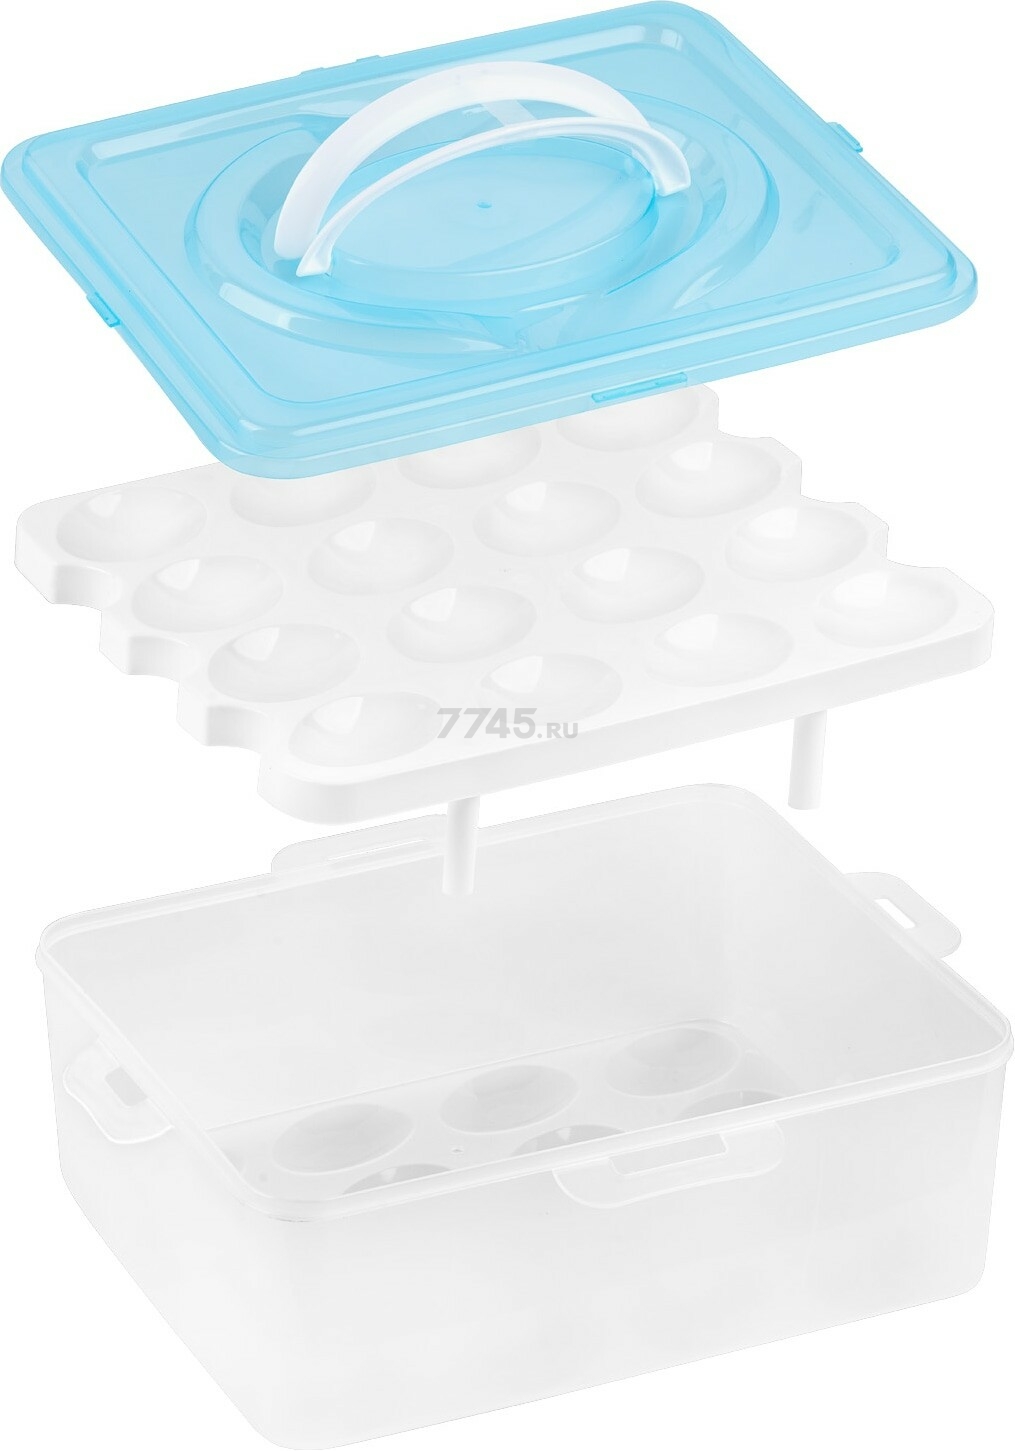 Контейнер пластиковый для хранения яиц PERFECTO LINEA 32 ячейки голубой (34-028232) - Фото 4